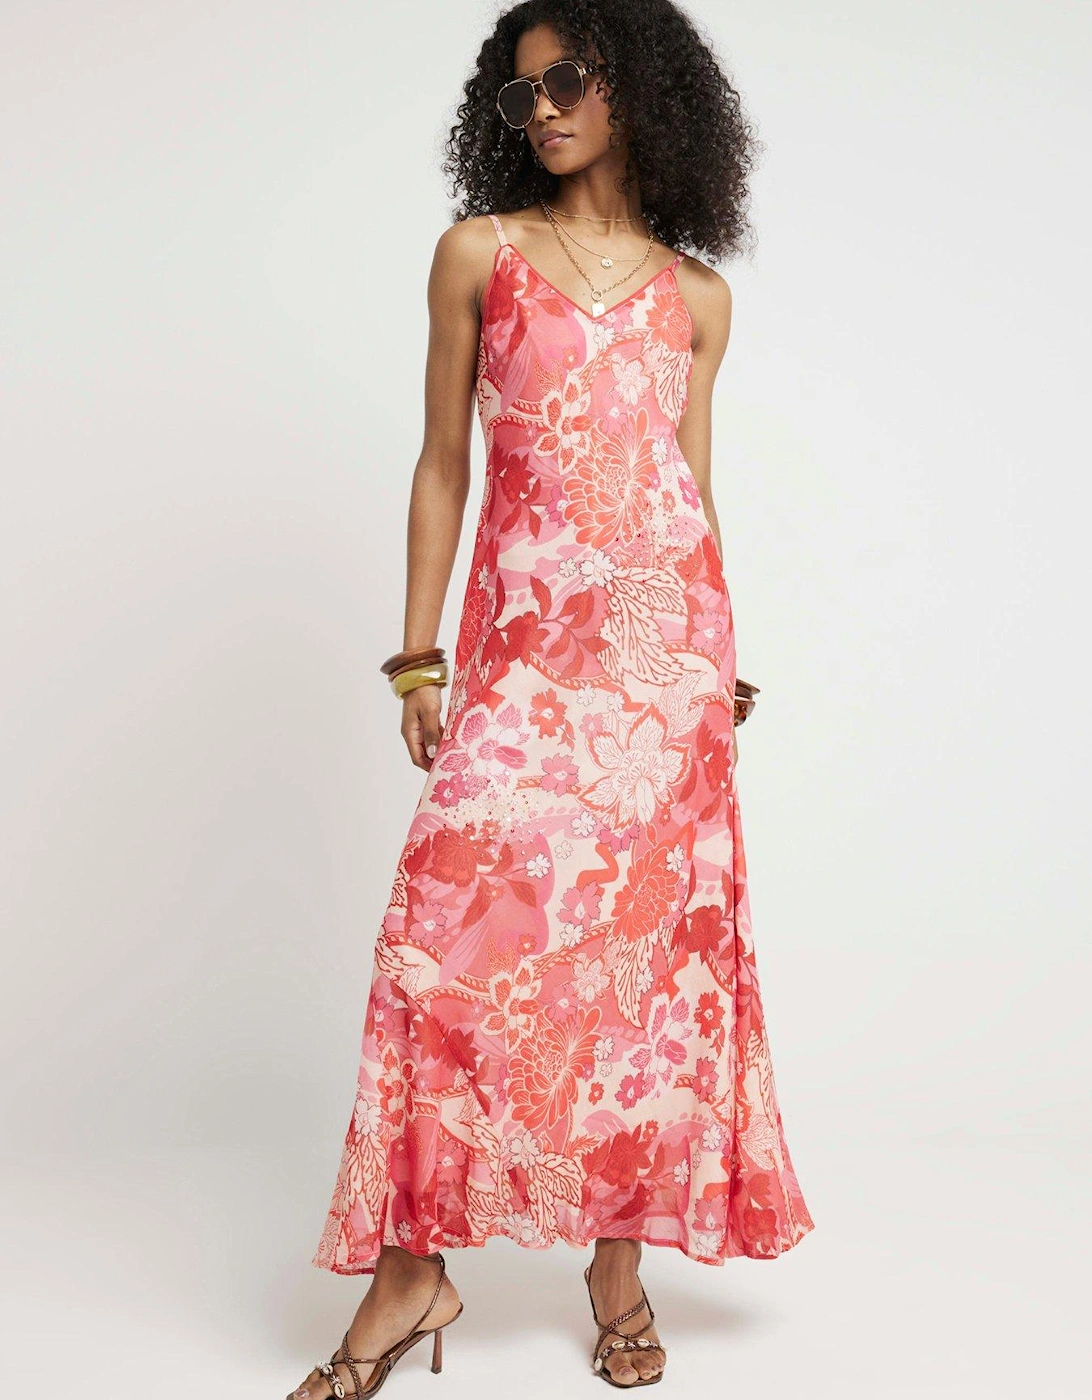 Floral Embellished Slip Dress - Pink, 6 of 5